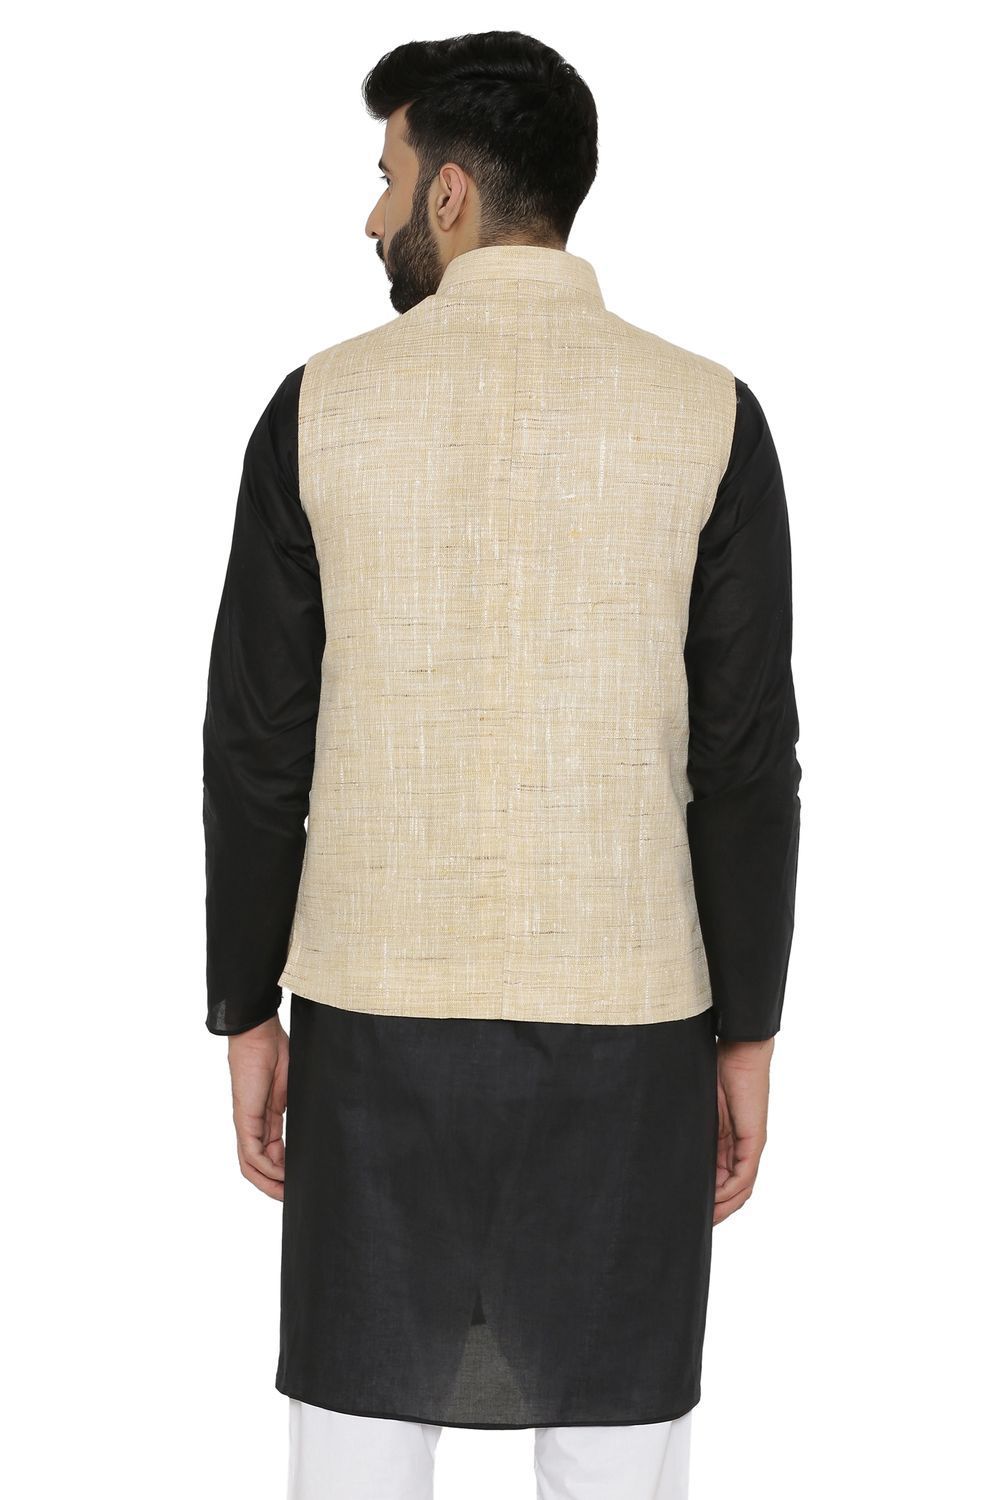 Cotton  Beige Nehru Jacket